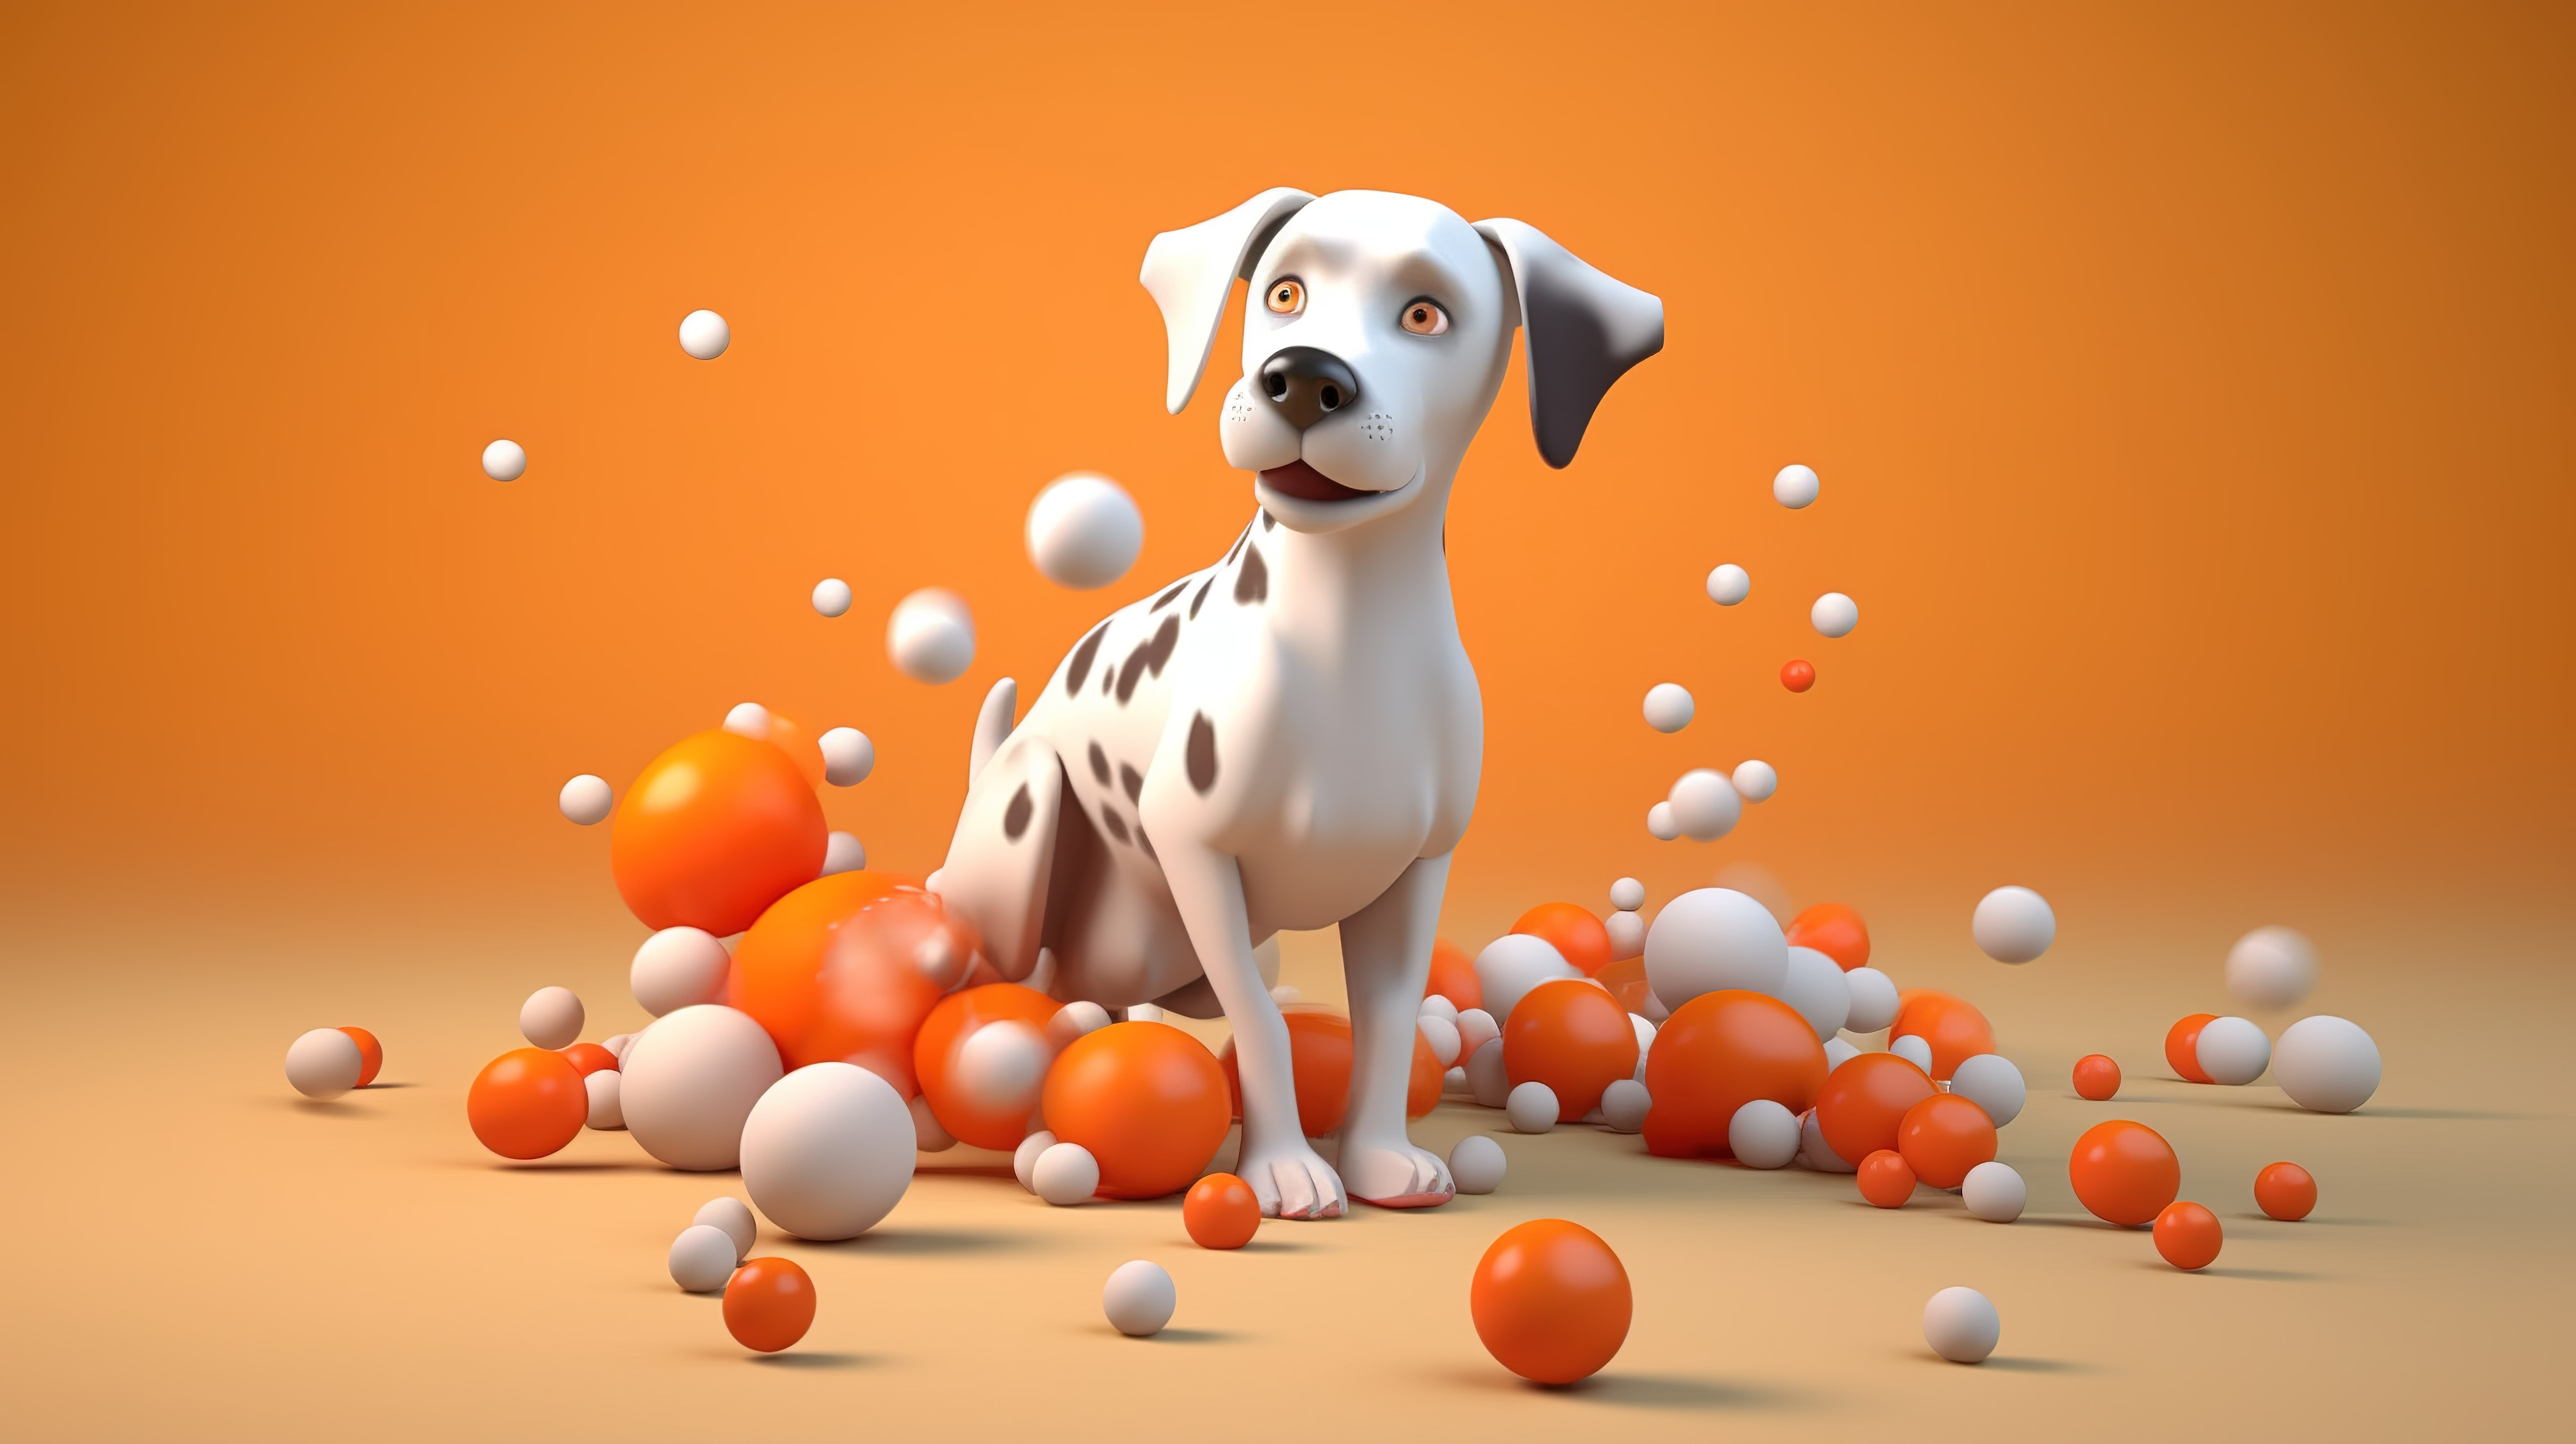 一只顽皮的狗在运动中的 3D 插图图片